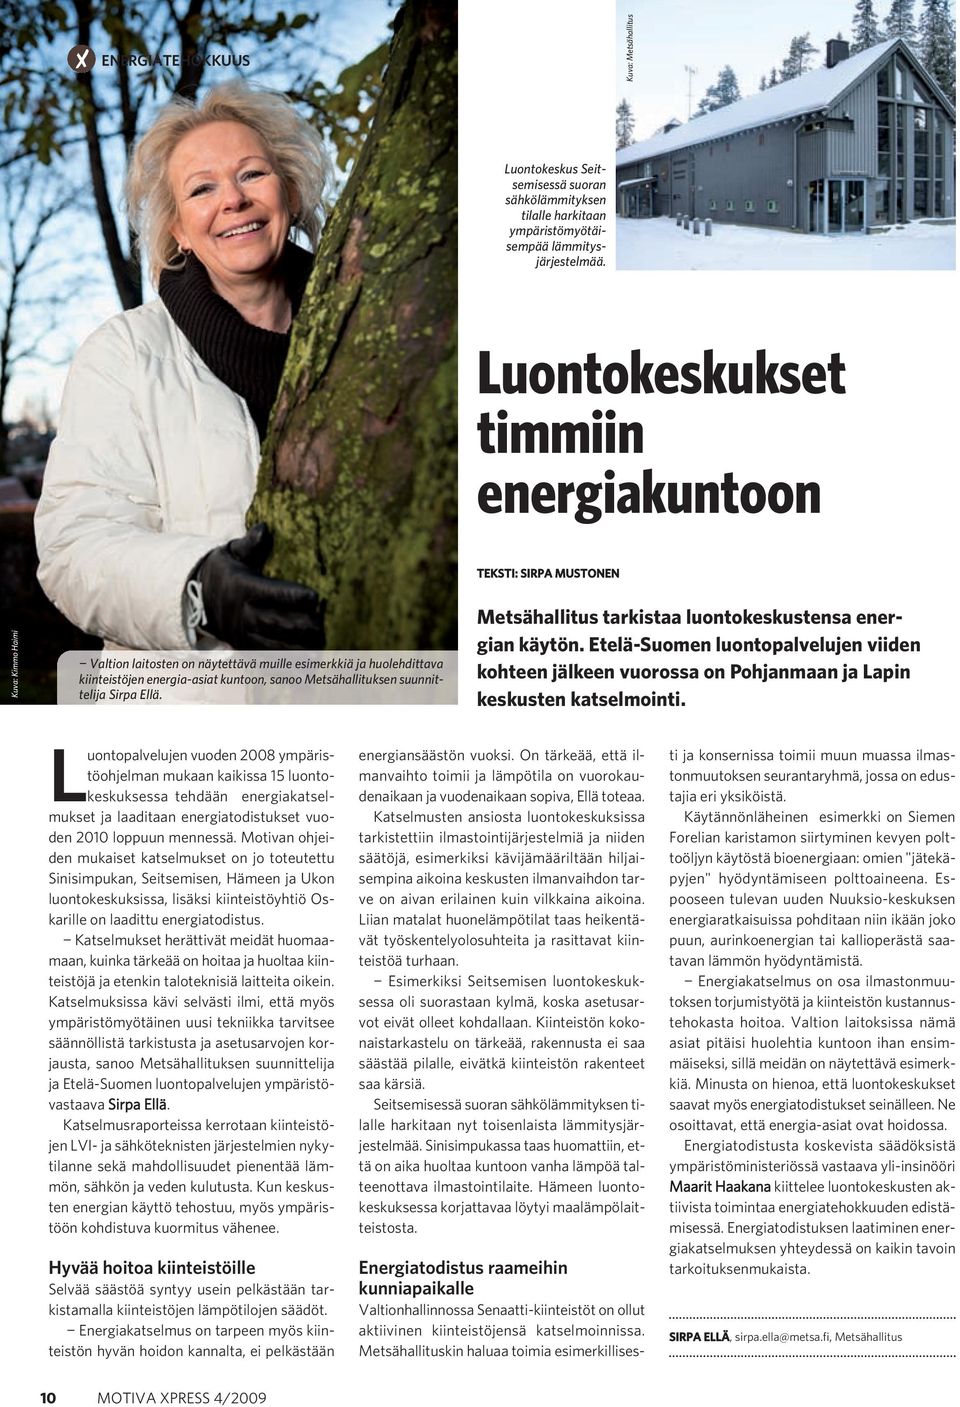 Metsähallituksen suunnittelija Sirpa Ellä. Metsähallitus tarkistaa luontokeskustensa energian käytön.